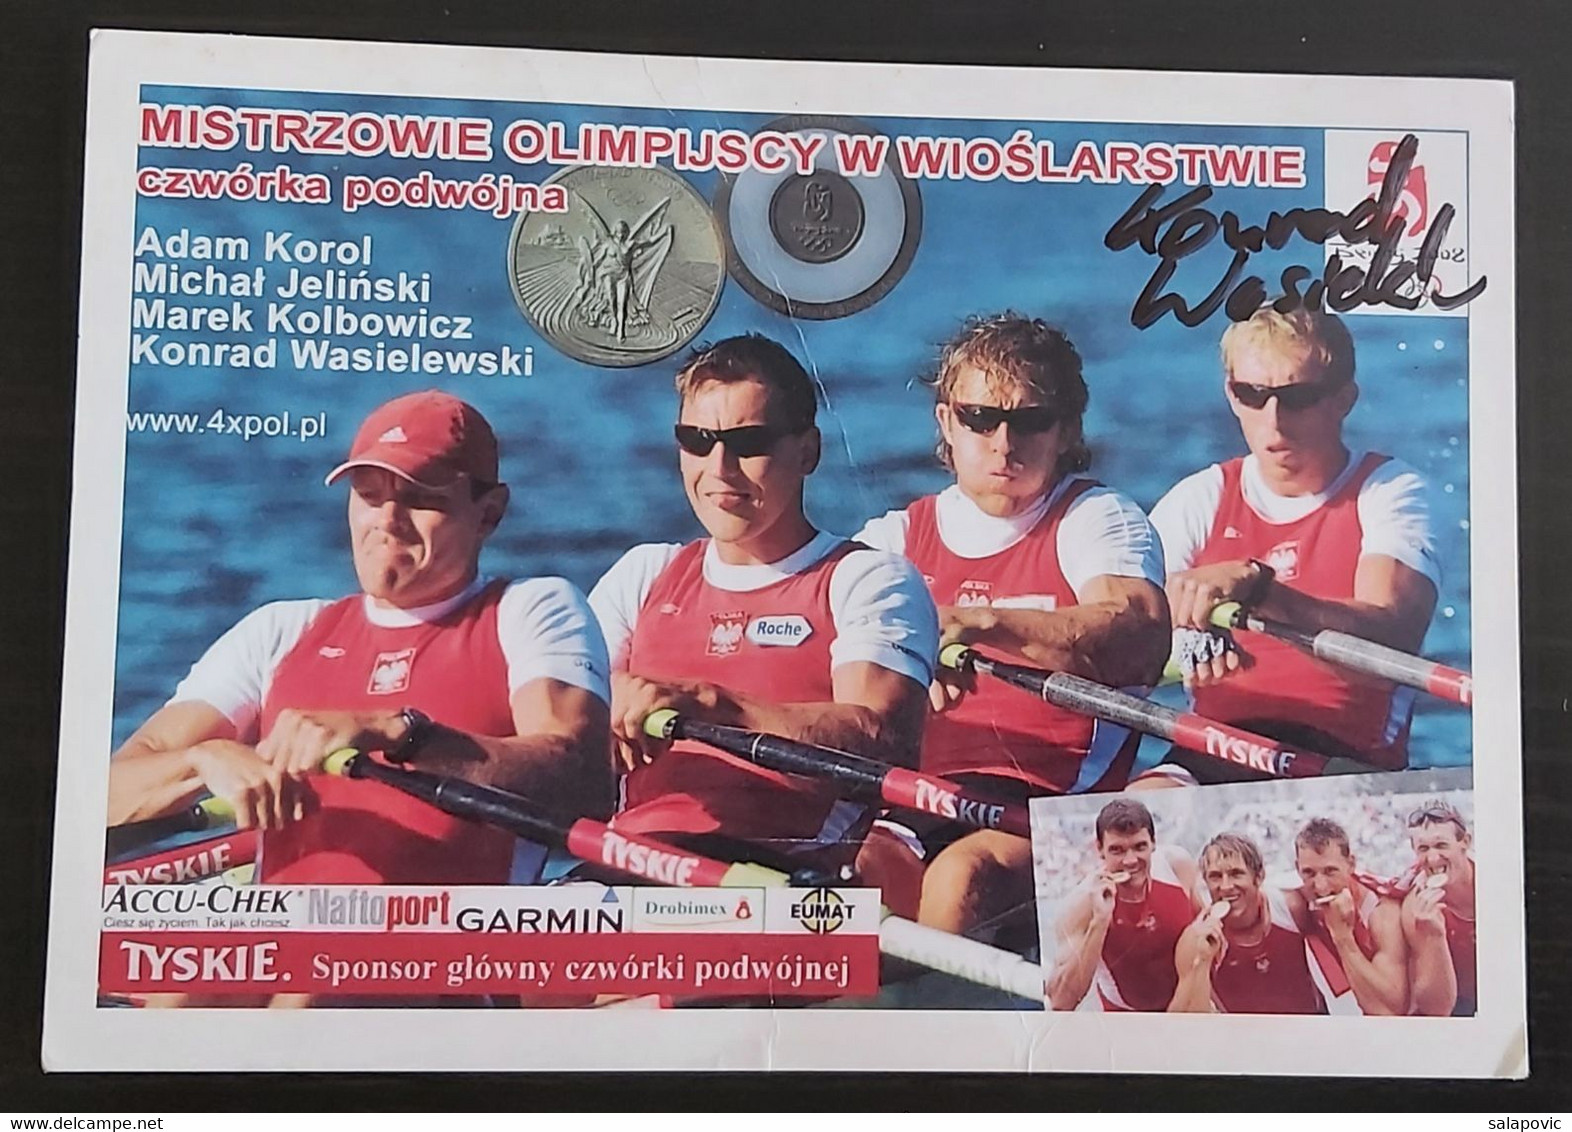 Olympic Champions In Rowing Double Foursome Poland Adam Korol, Michal Jelinski, Marek Kolbowicz, Konrad Wasielewski SL-2 - Rowing